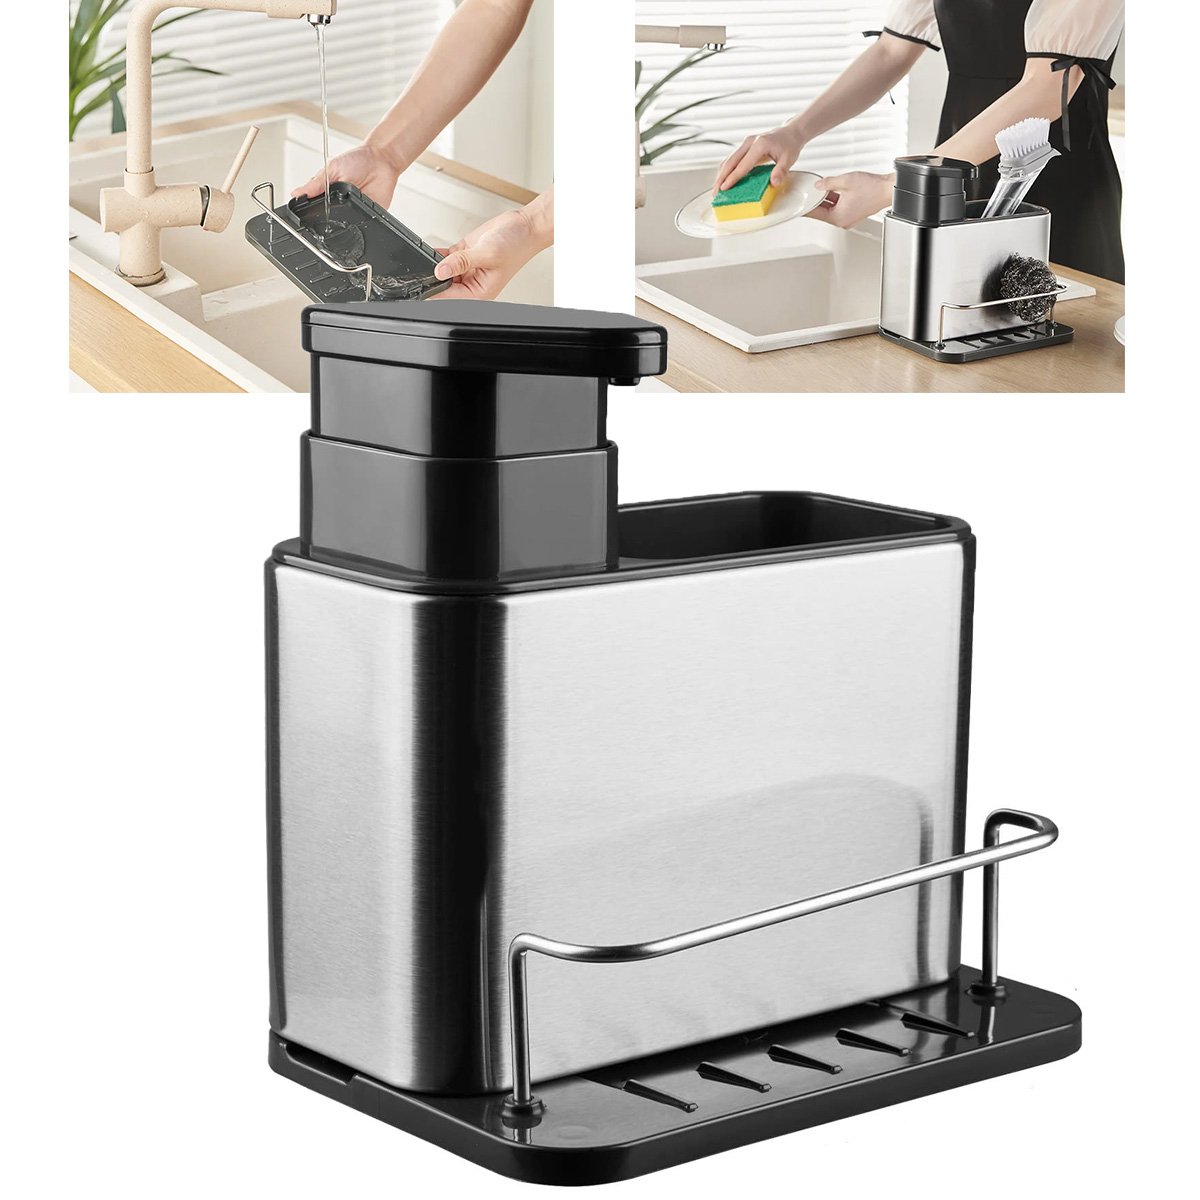 Dispenser Porta Detergente Escorredor Esponja 3 em 1 Inox Cozinha Pia Balcao Limpeza Higiene Escorre - 1